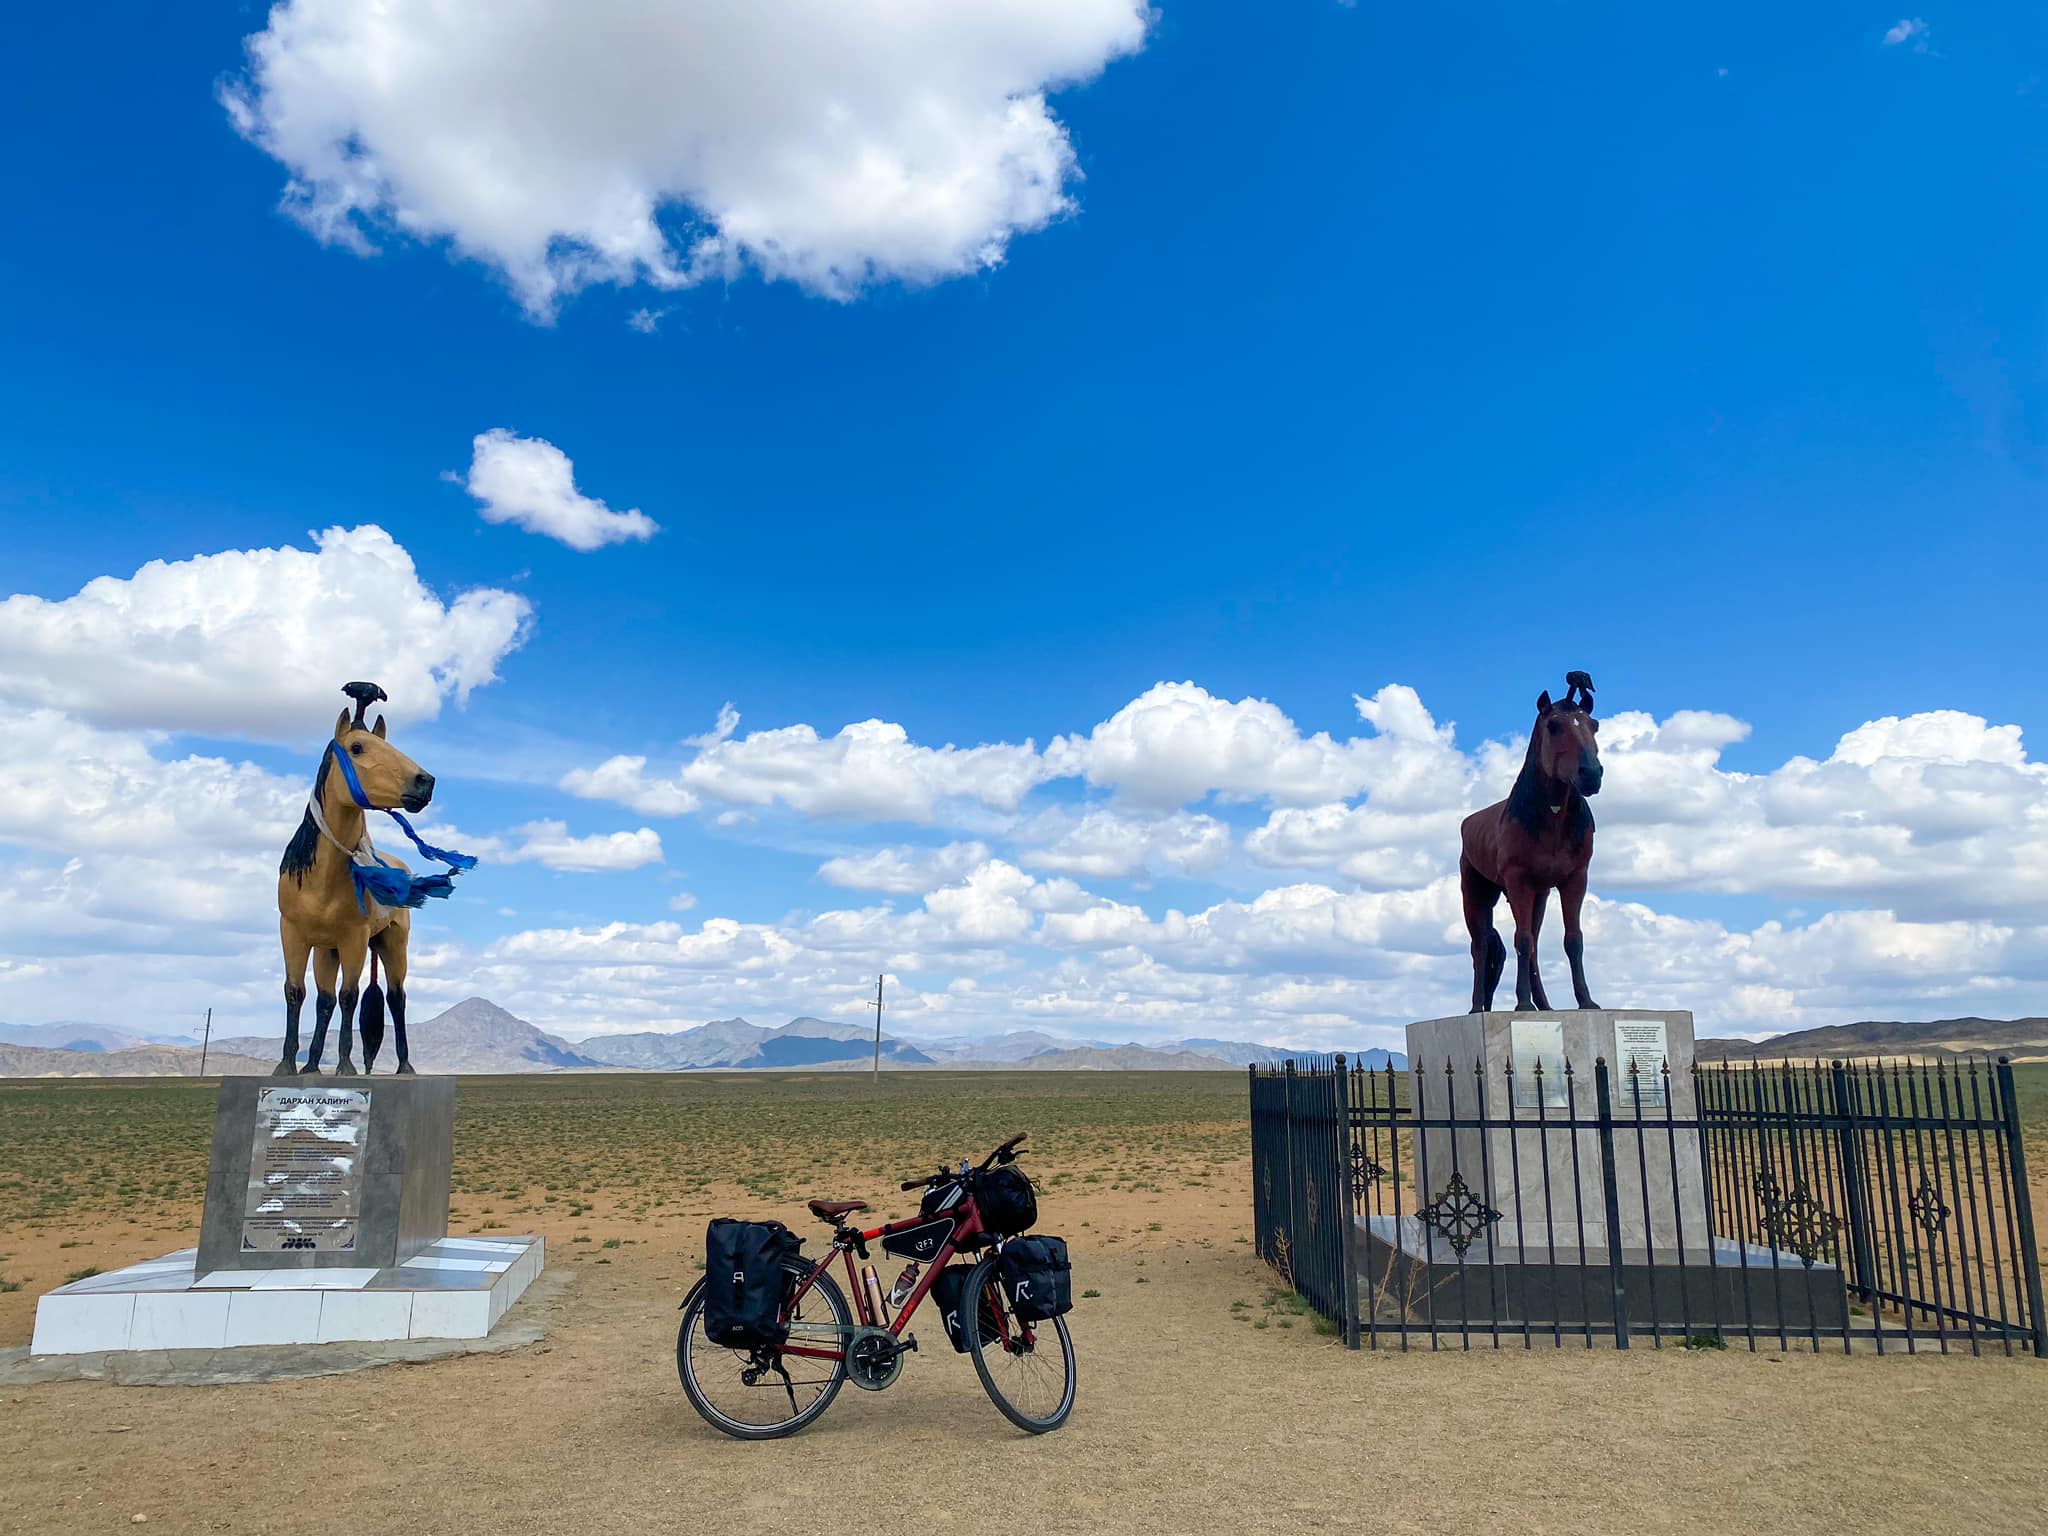 Дугуйгаар 19 улсыг 14,000 км туулсан Монгол залуугийн түүх